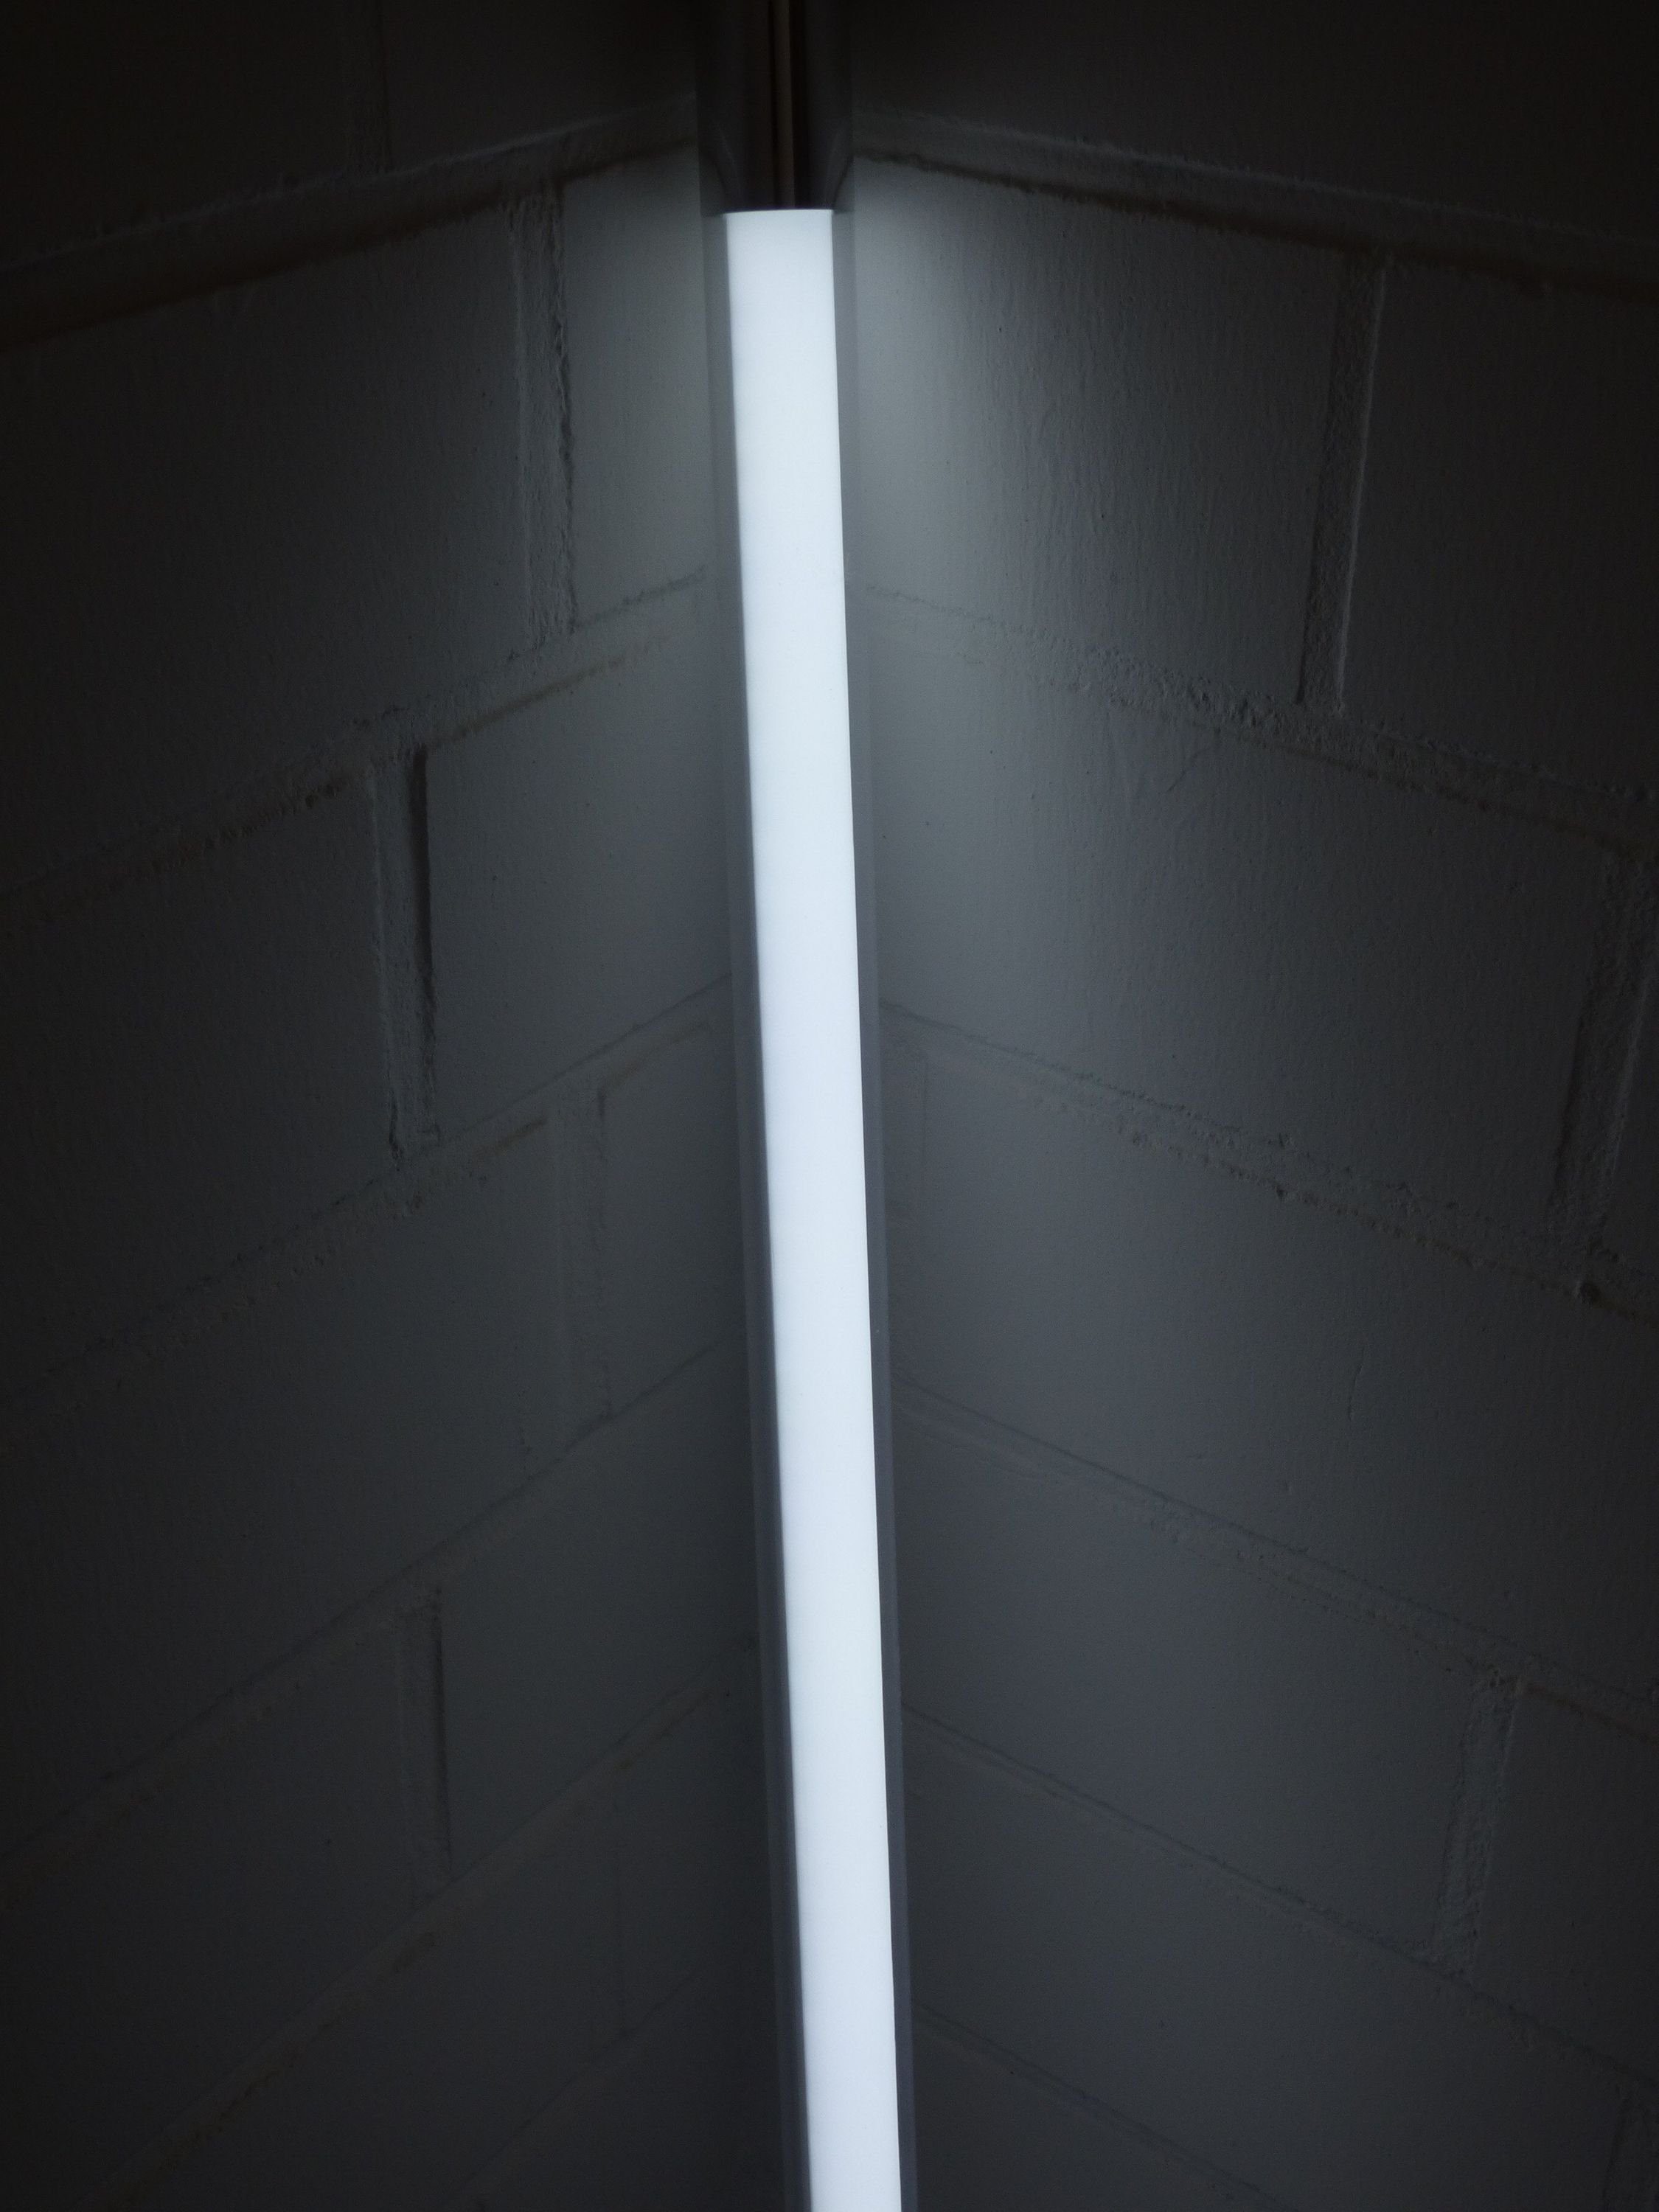 XENON LED Wandleuchte LED Leuchtstab 10 Watt kalt weiß 900 Lumen 63 cm IP-20 Innen, LED Rohre ca. 50% Stromersparnis gegenüber Leuchtstoffröhre, Xenon / Kalt Weiß